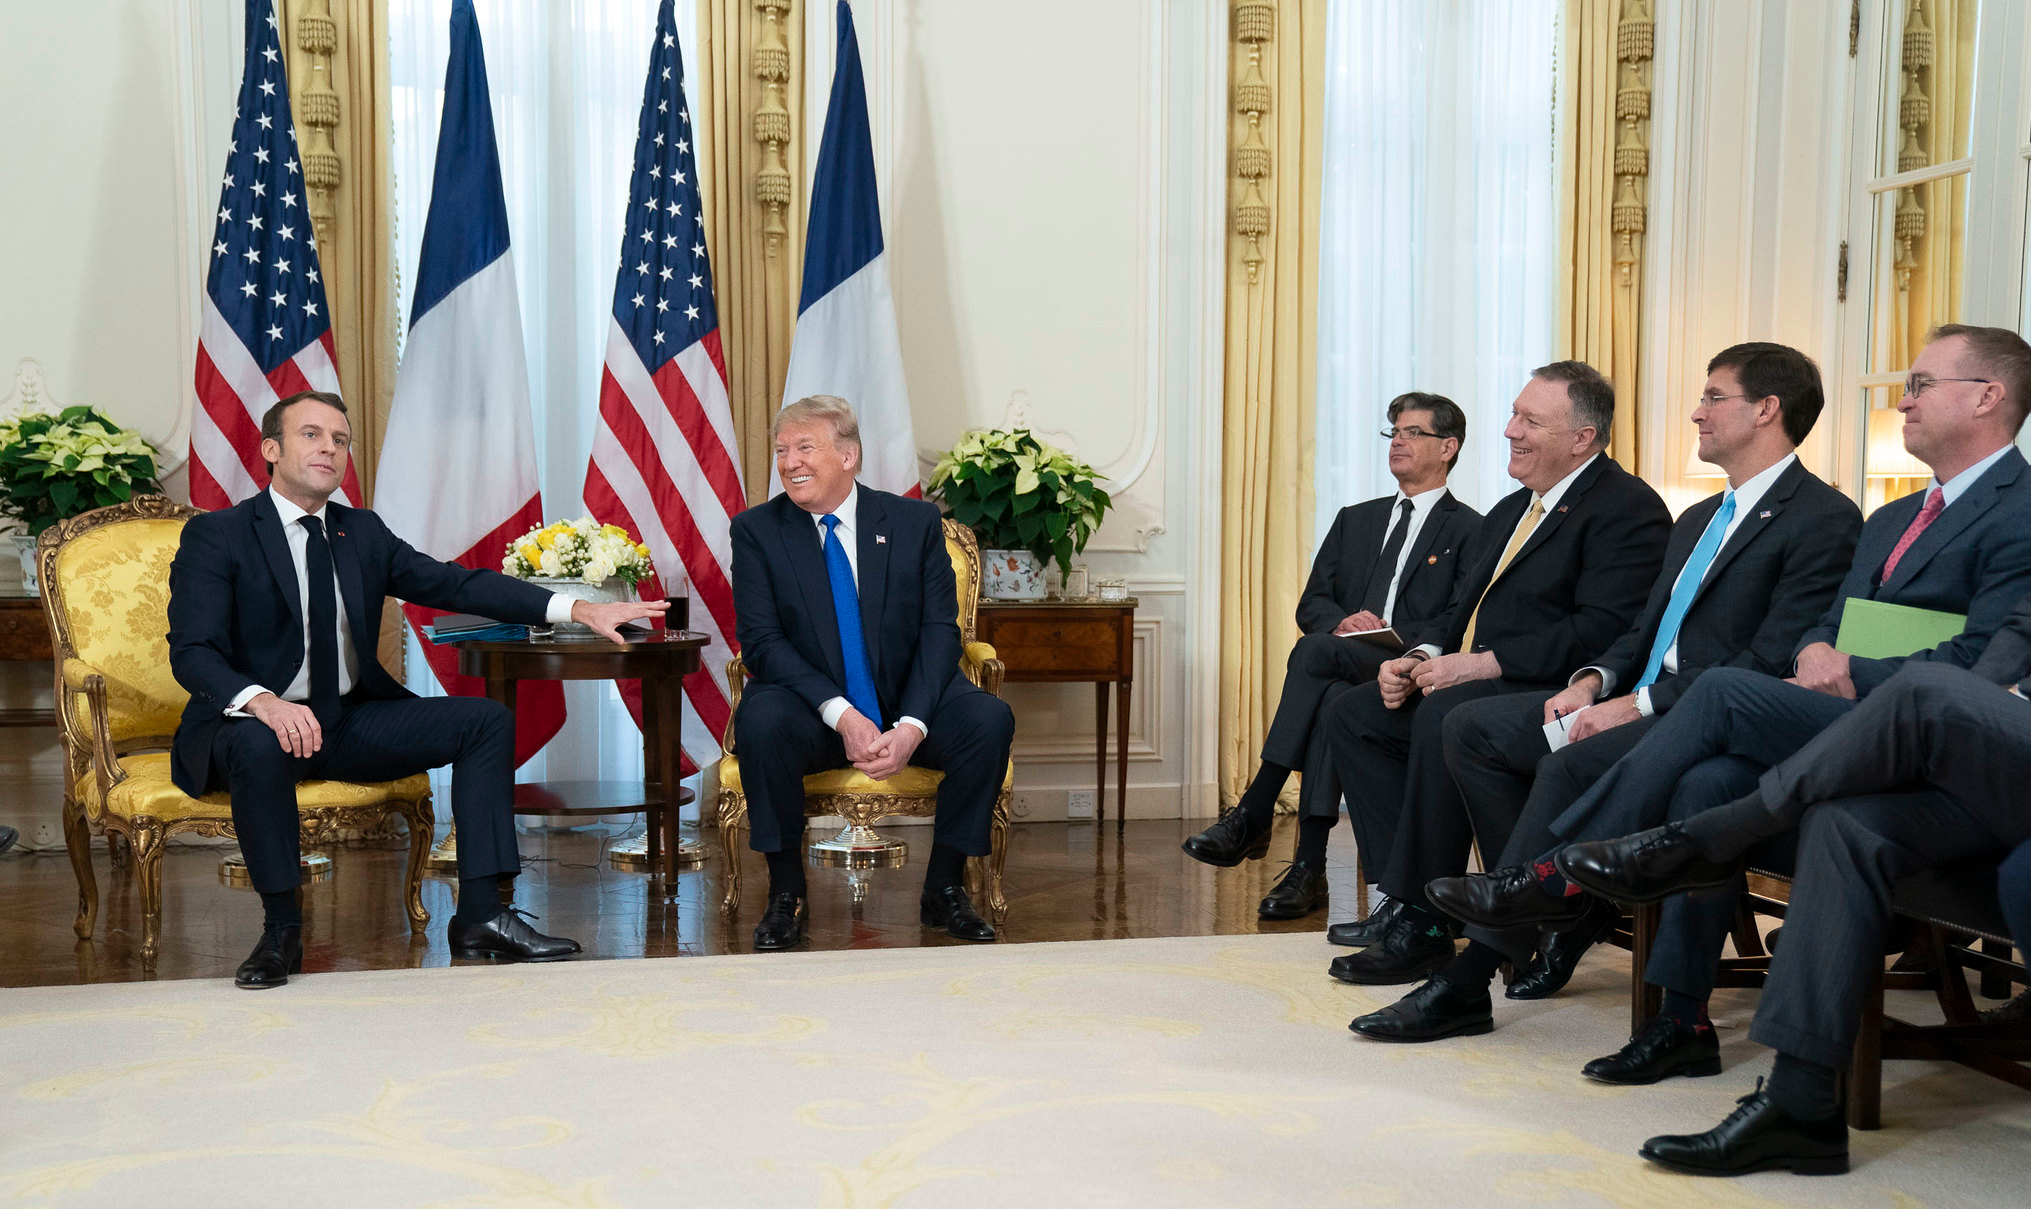 Para o presidente da França, os países precisam se reunir para esclarecer alguns pontos, como o que cada país considera terrorismo e quem são os inimigos a serem combatidos